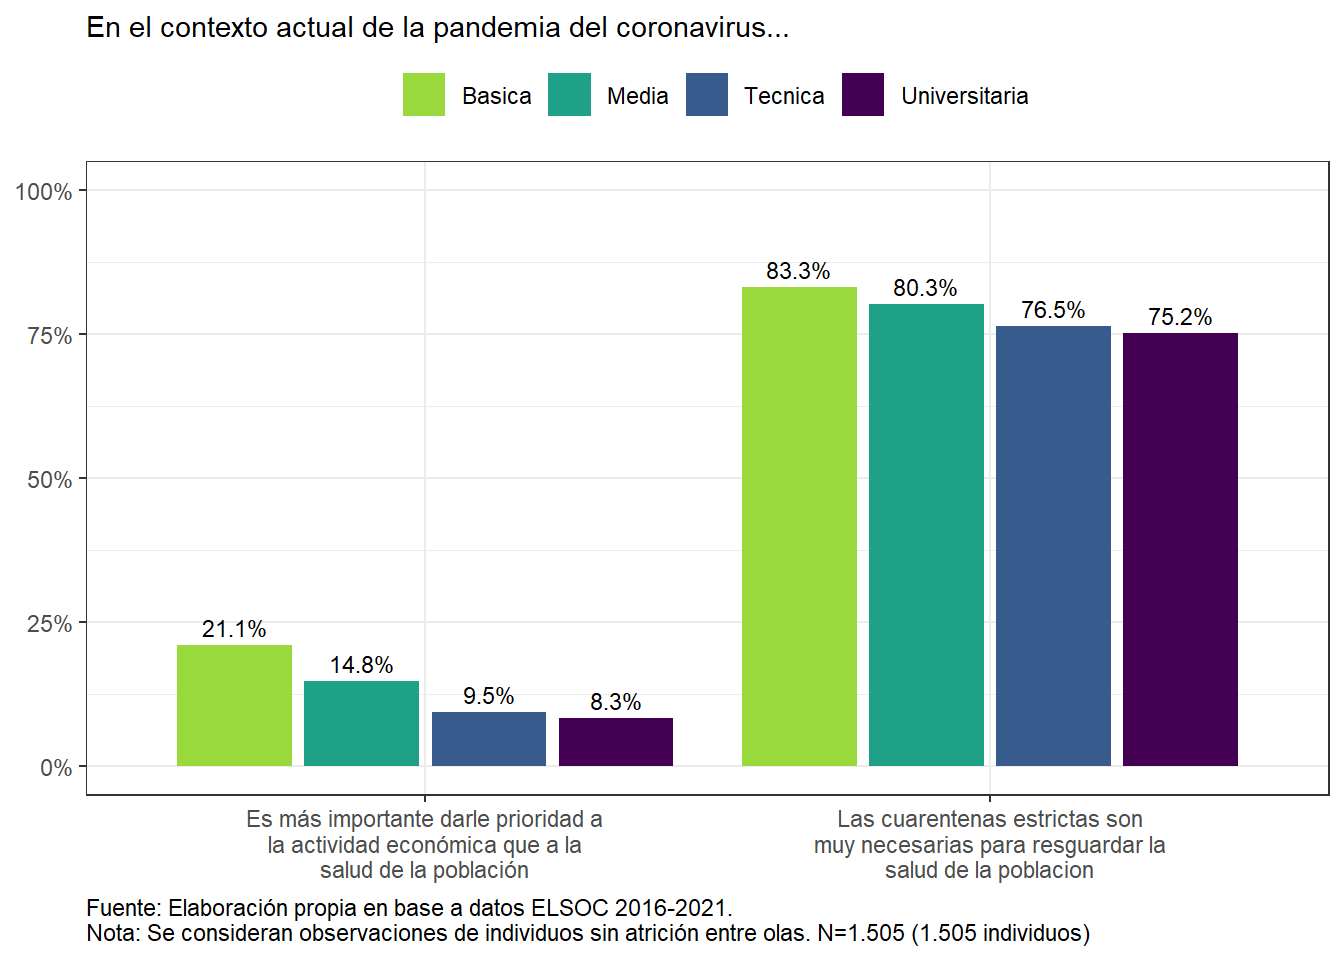 Porcentaje De acuerdo o Muy de acuerdo con medidas sanitarias, según nivel educacional (2021)